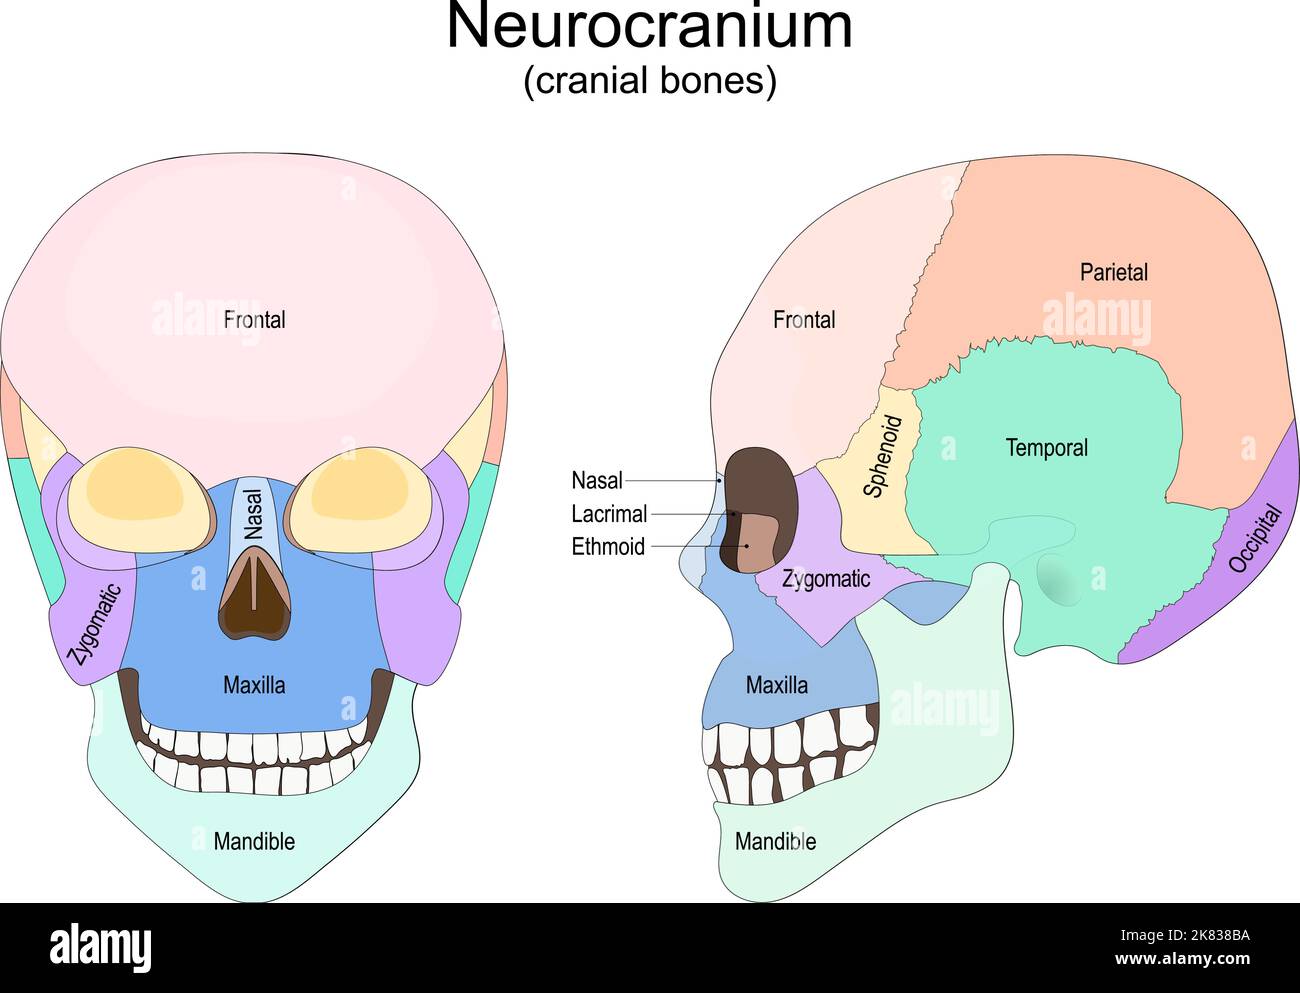 Cranio umano dalla vista frontale e laterale. Neurogranio. Ossa craniche. Poster vettoriale per uso medico e didattico Illustrazione Vettoriale